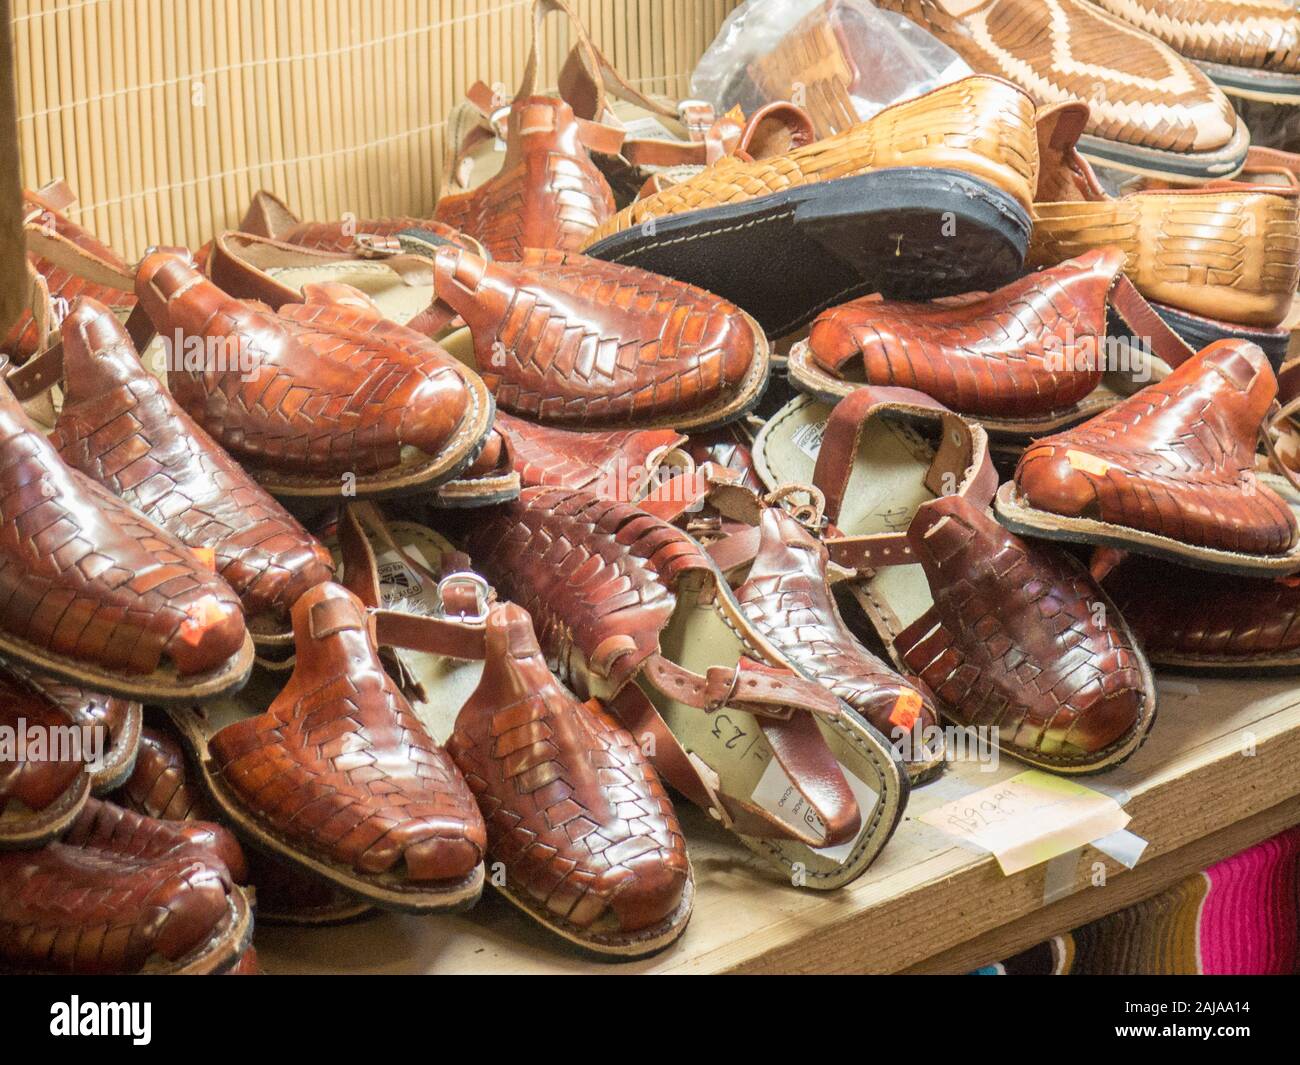 Mexikanische leichter Style Schuhe und Sandalen für den Verkauf in Mercado,  San Antonio, Texas Stockfotografie - Alamy